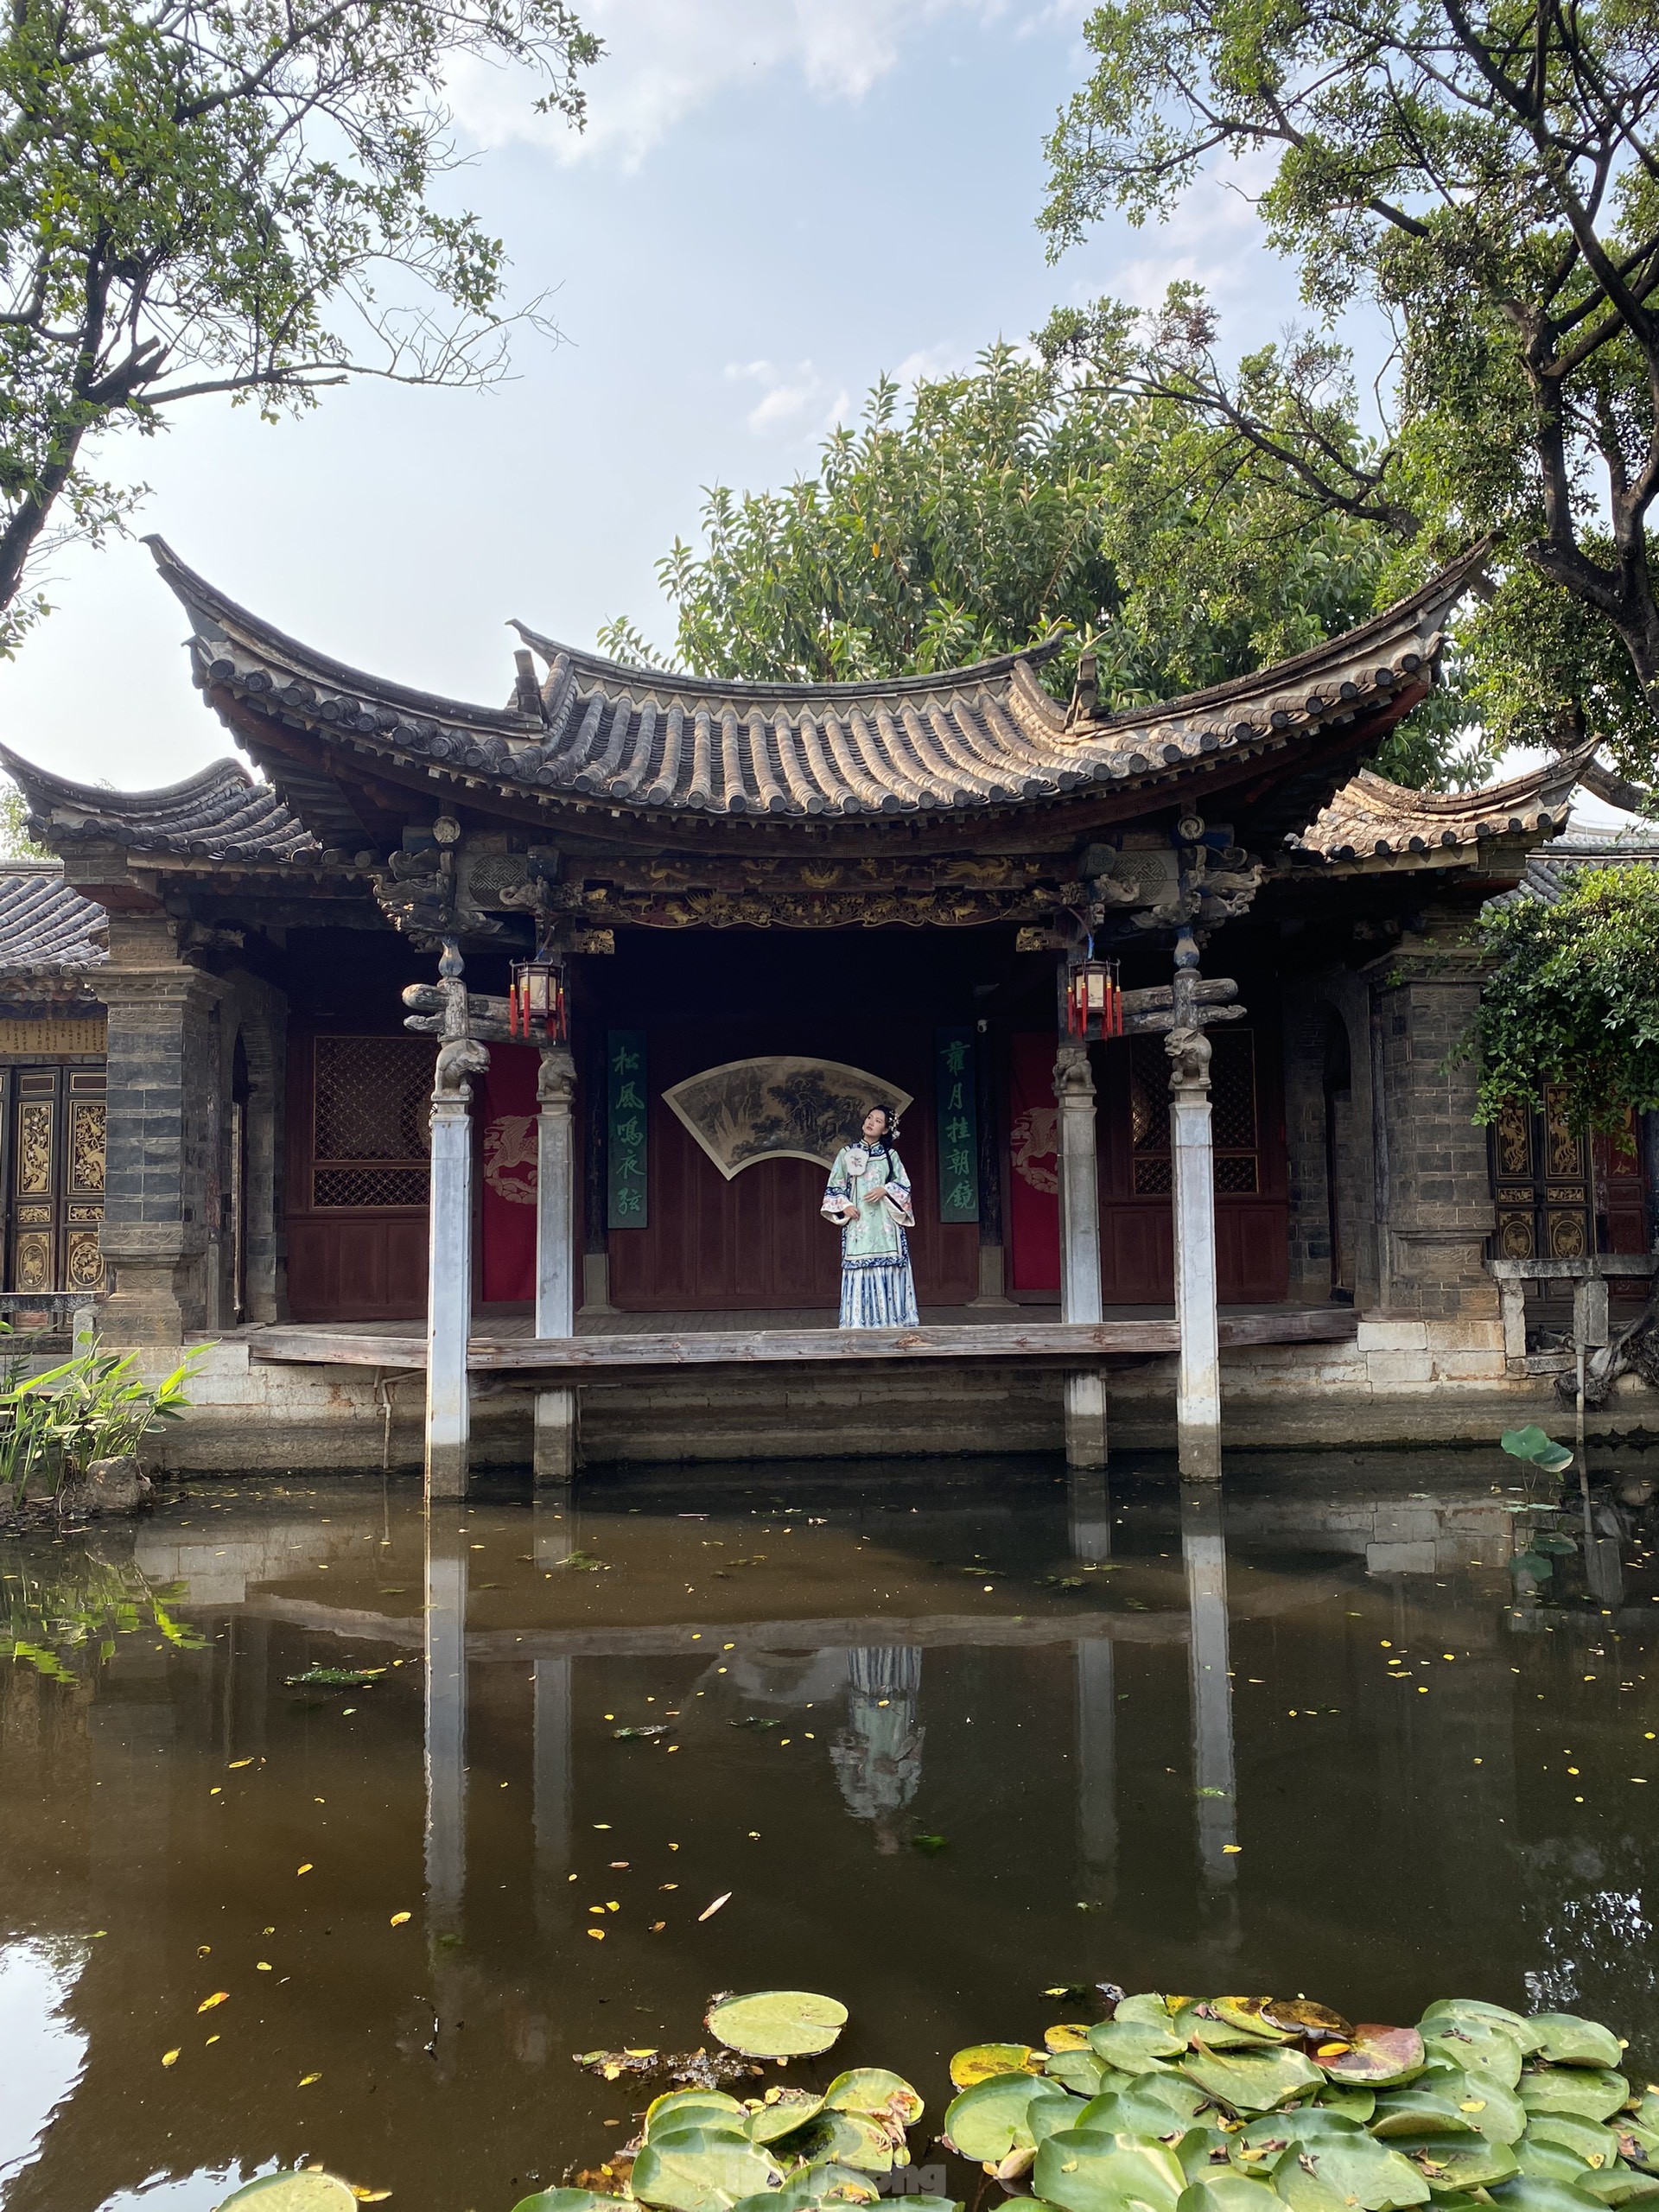 Chiêm ngưỡng vẻ đẹp kiến trúc của thành cổ Trung Quốc ảnh 5